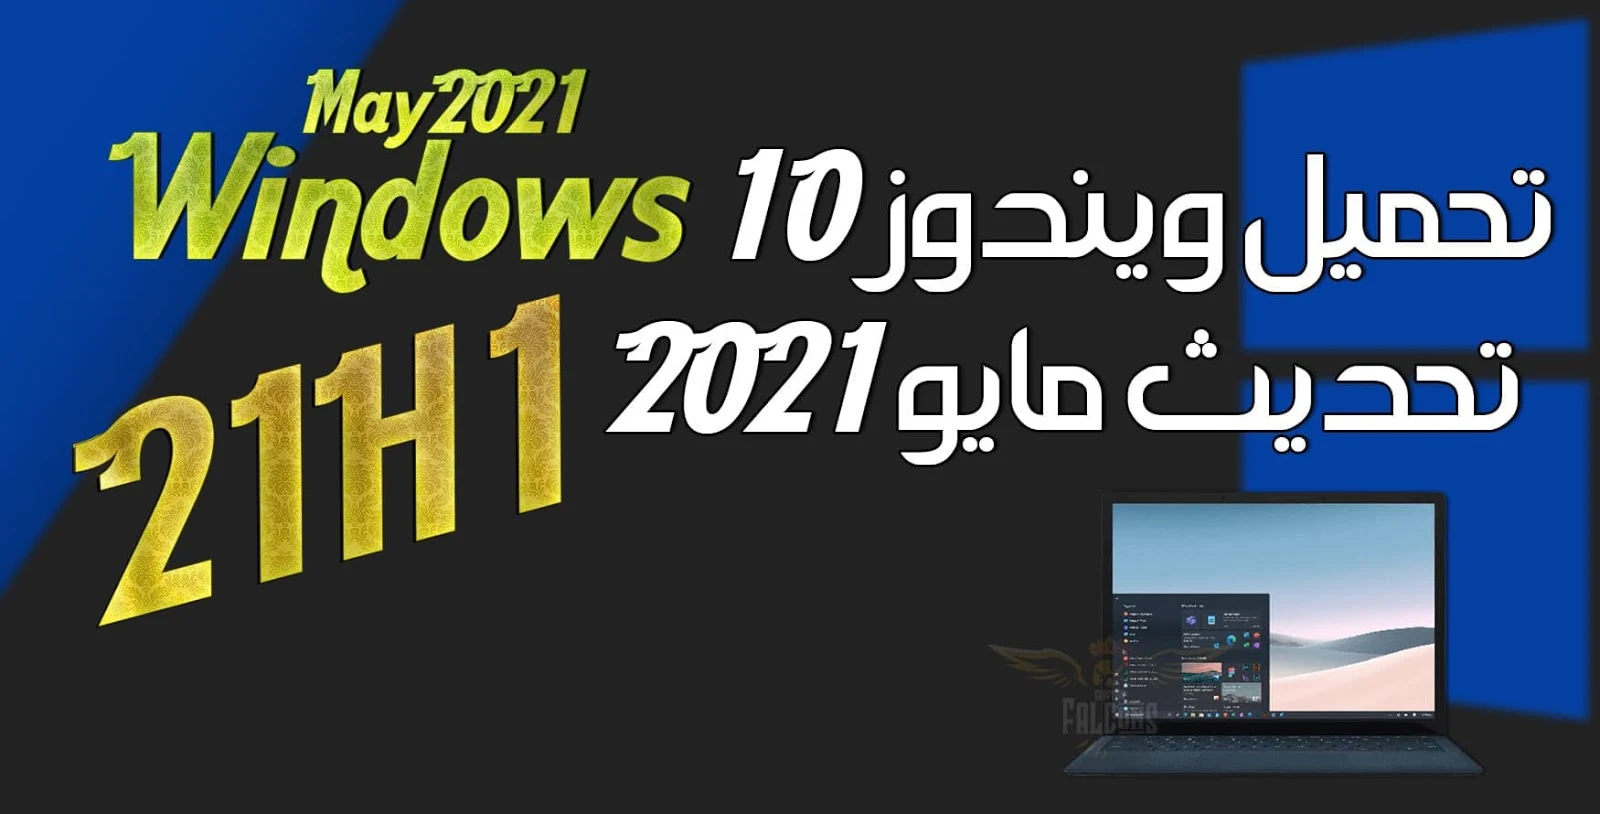 تنزيل ويندوز 10 تحديث مايو 2021 Windows 10 21H1